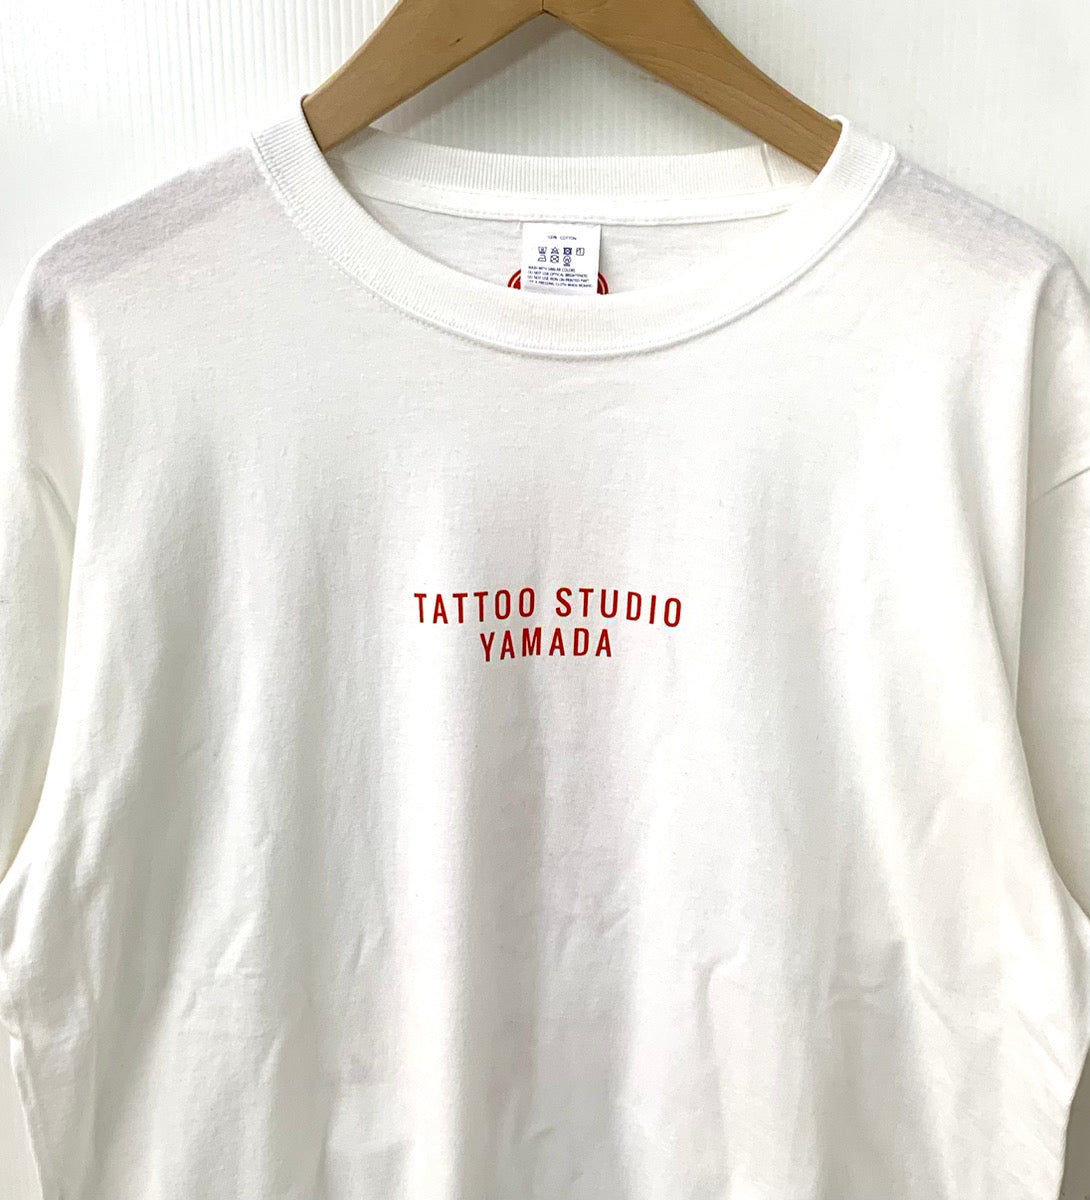 タトゥースタジオ 山田 TATTOO STUDIO YAMADA Tシャツ プリント